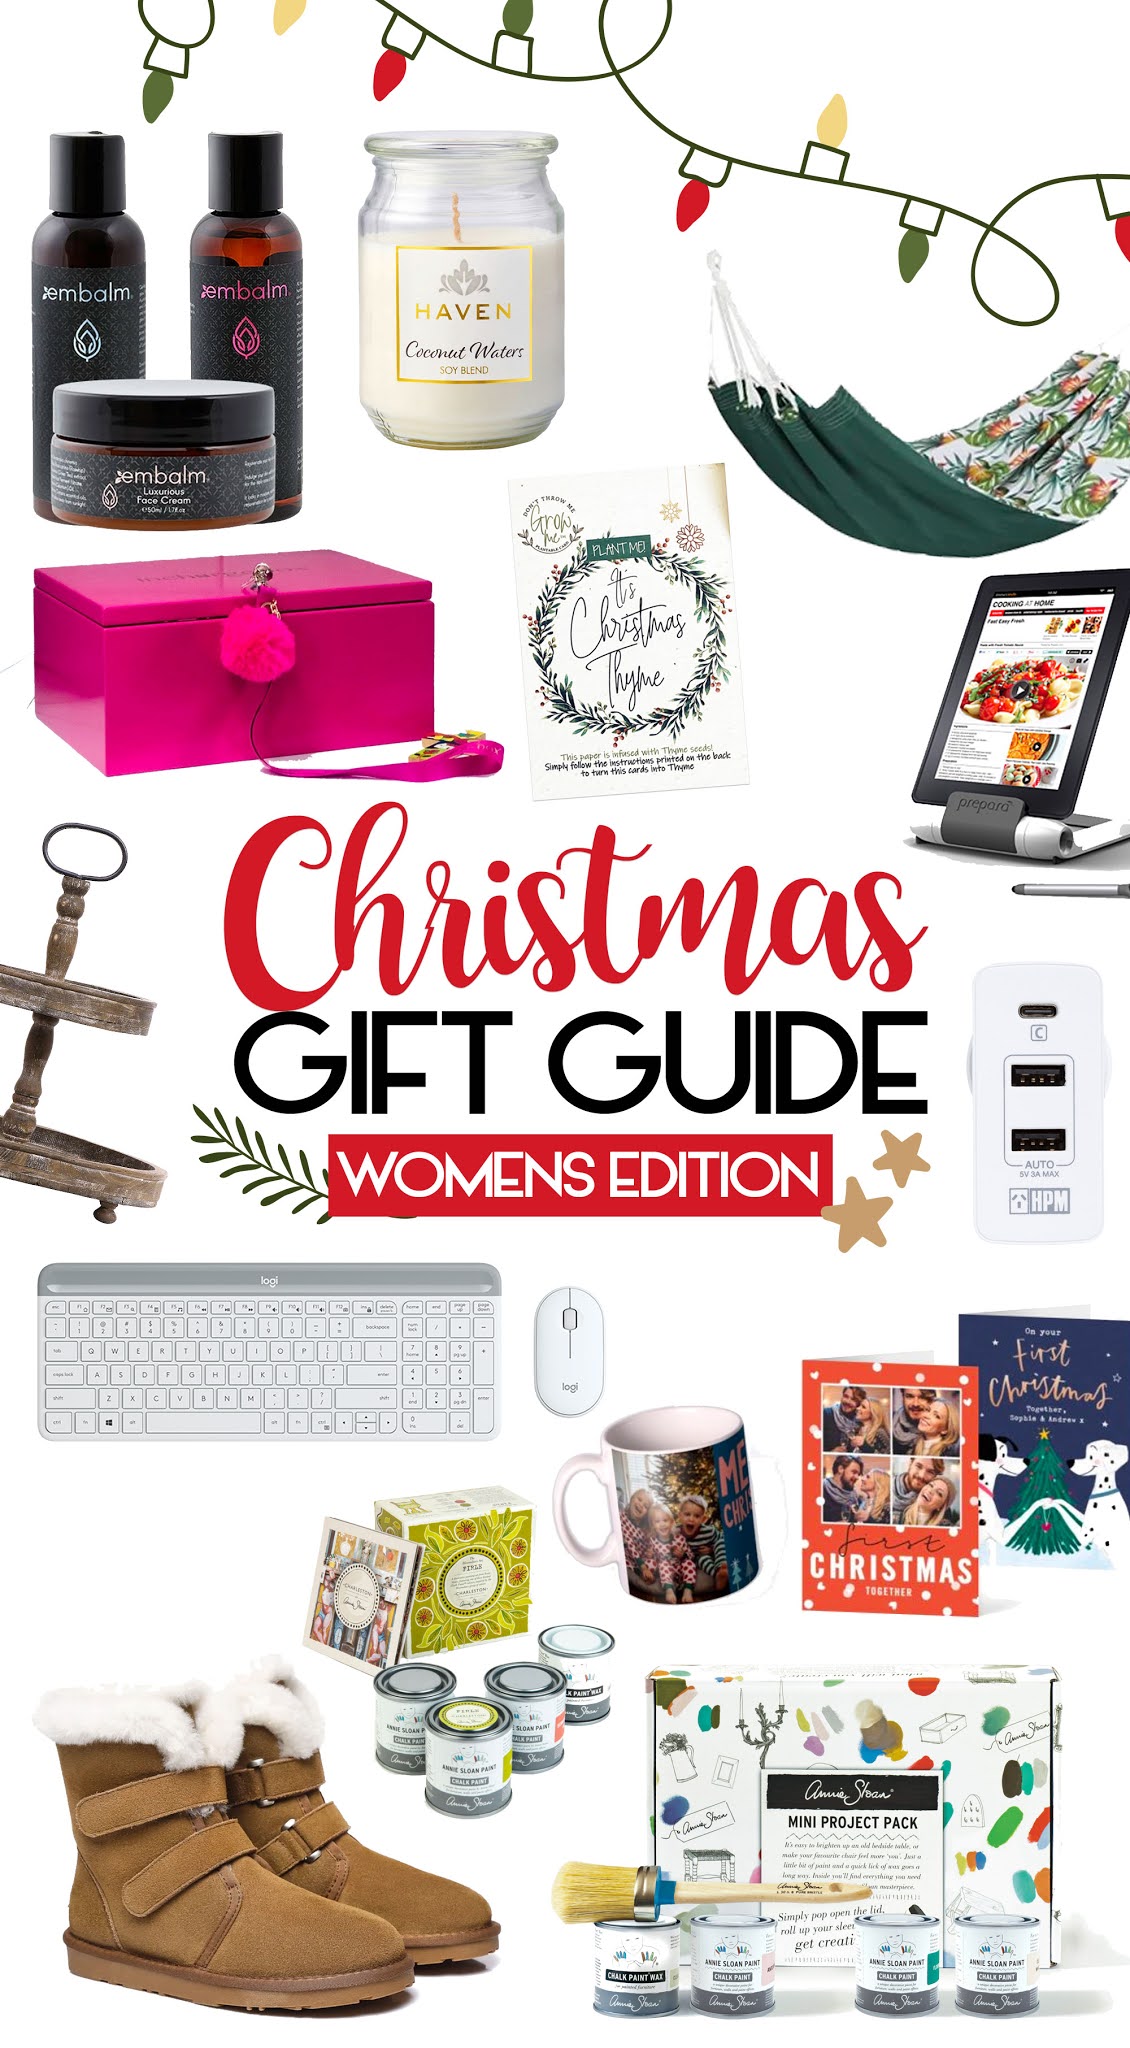 Christmas Gift Ideas For Women